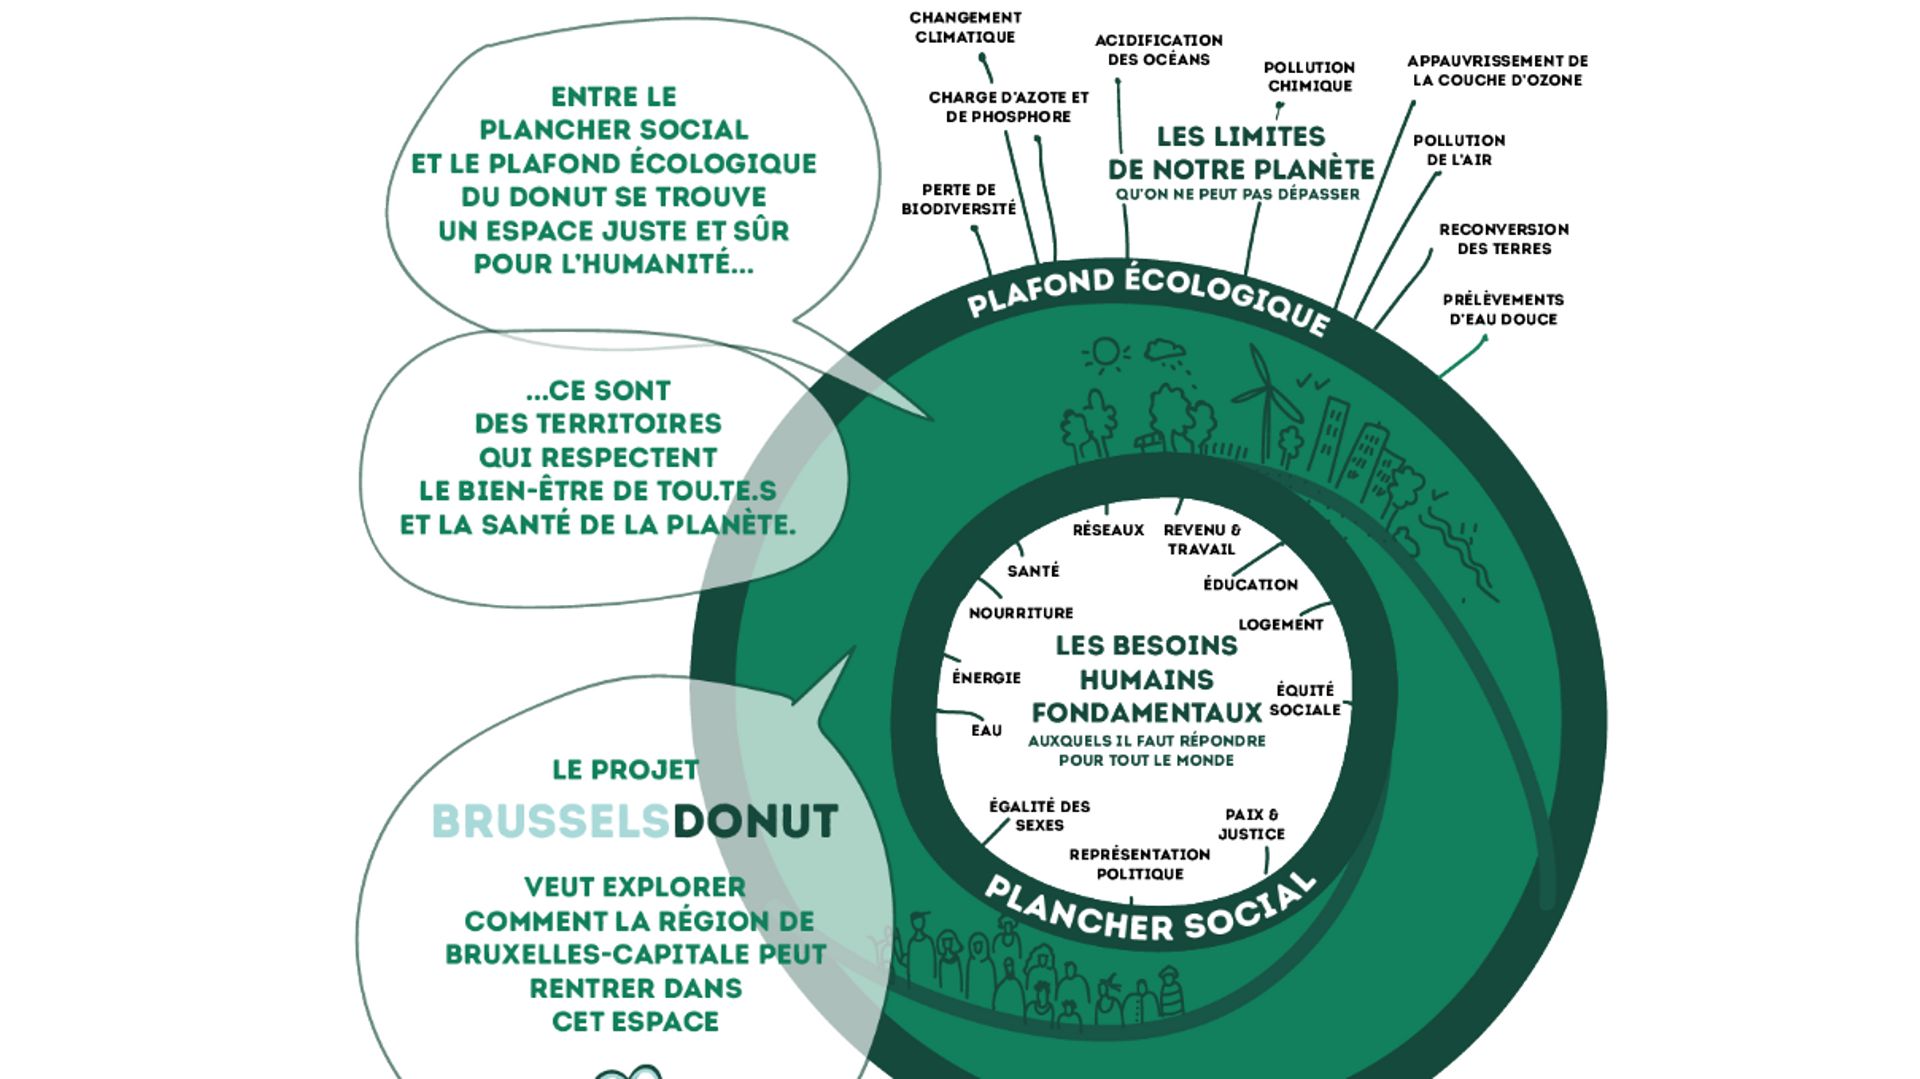 La Région bruxelloise mise sur "la théorie du Donut" pour sa transition économique